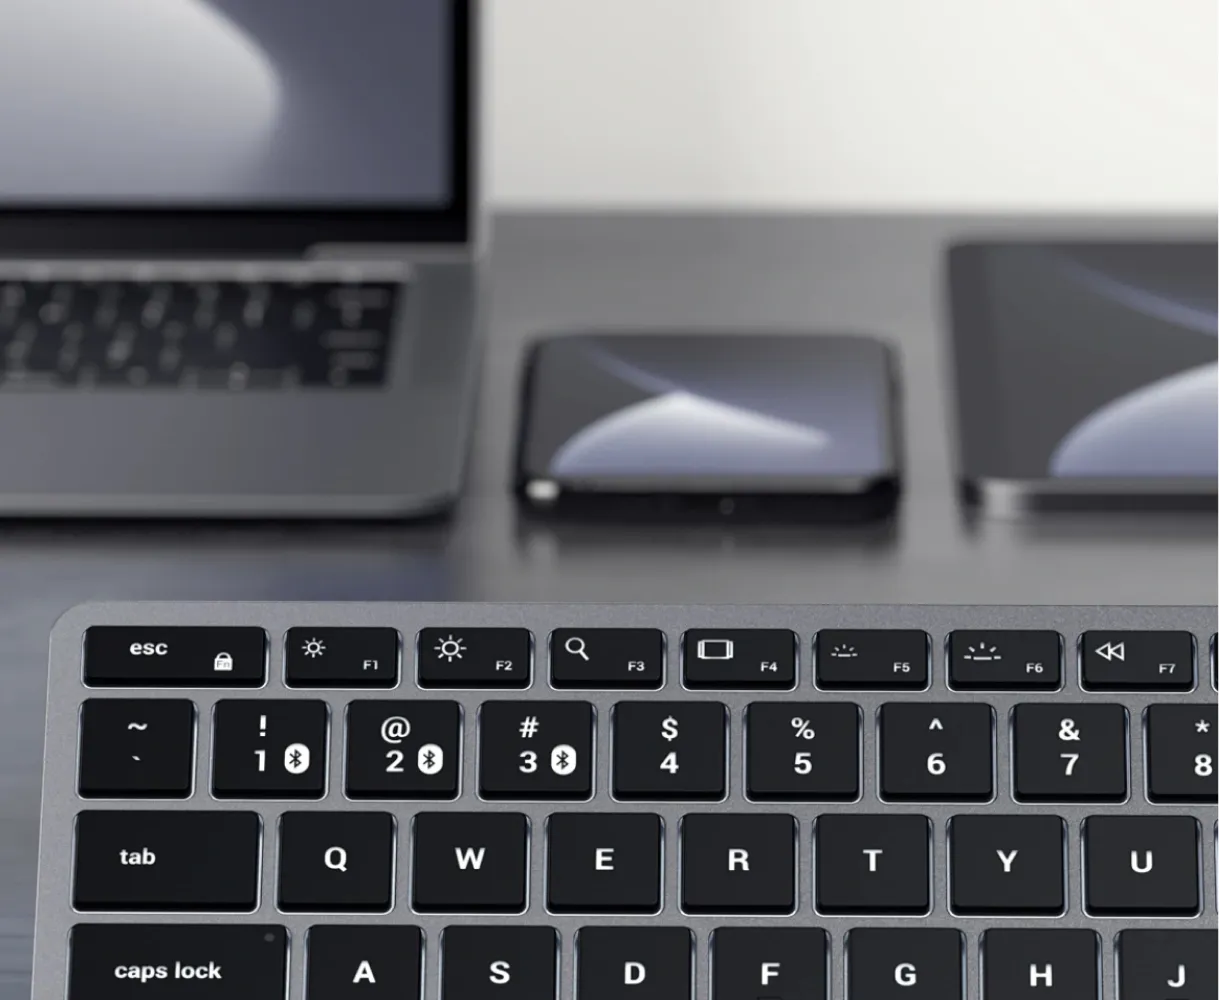 Беспроводная клавиатура Satechi Slim X1 Bluetooth Keyboard. Цвет: "серый космос"